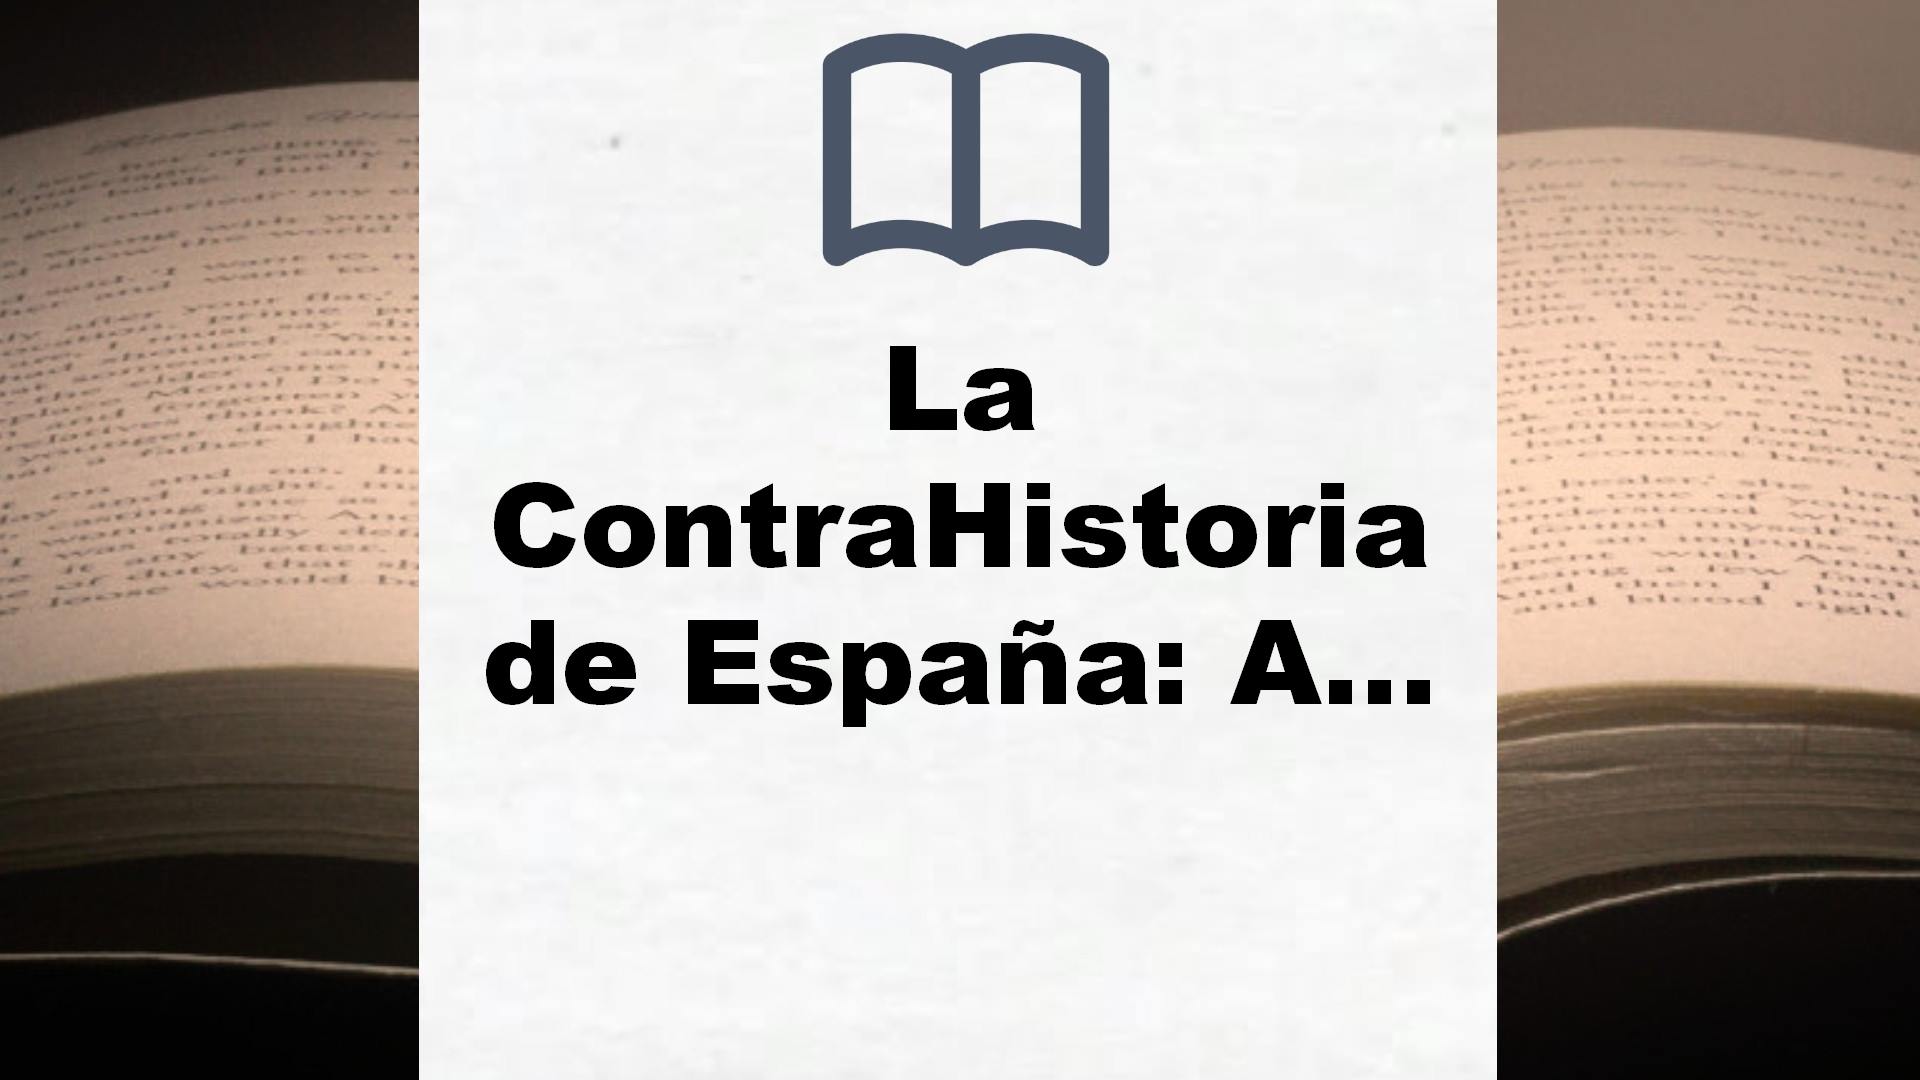 La ContraHistoria de España: Auge, caída y vuelta a empezar de un país en 28 episodios históricos – Reseña del libro